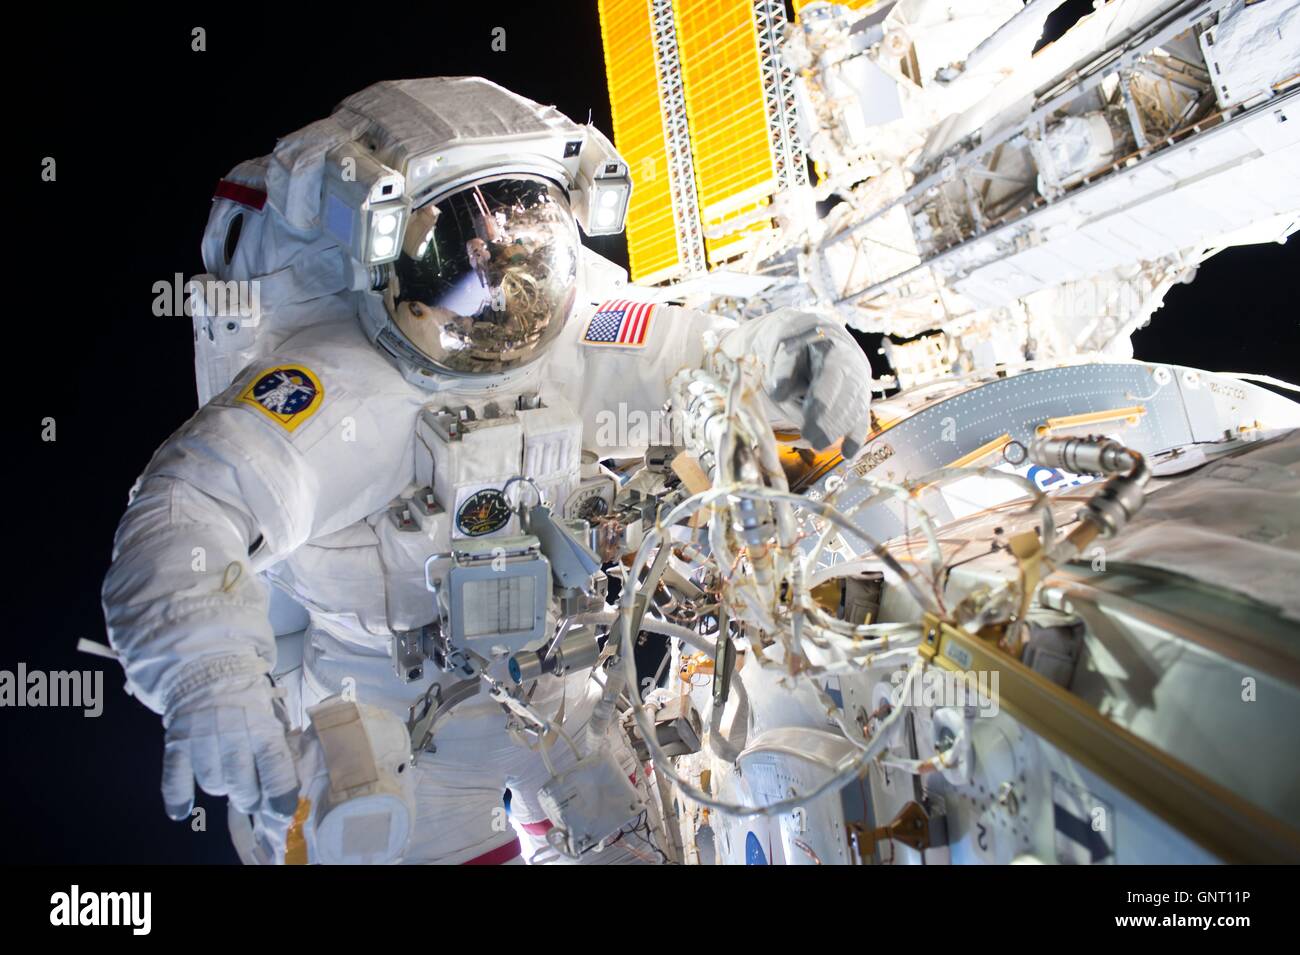 Stazione Spaziale Internazionale Expedition 48 astronauta Jeff Williams durante una spacewalk con il compagno astronauta Kate Rubins per installare un nuovo internazionale adattatore docking Agosto 19, 2016 in orbita intorno alla terra. Foto Stock